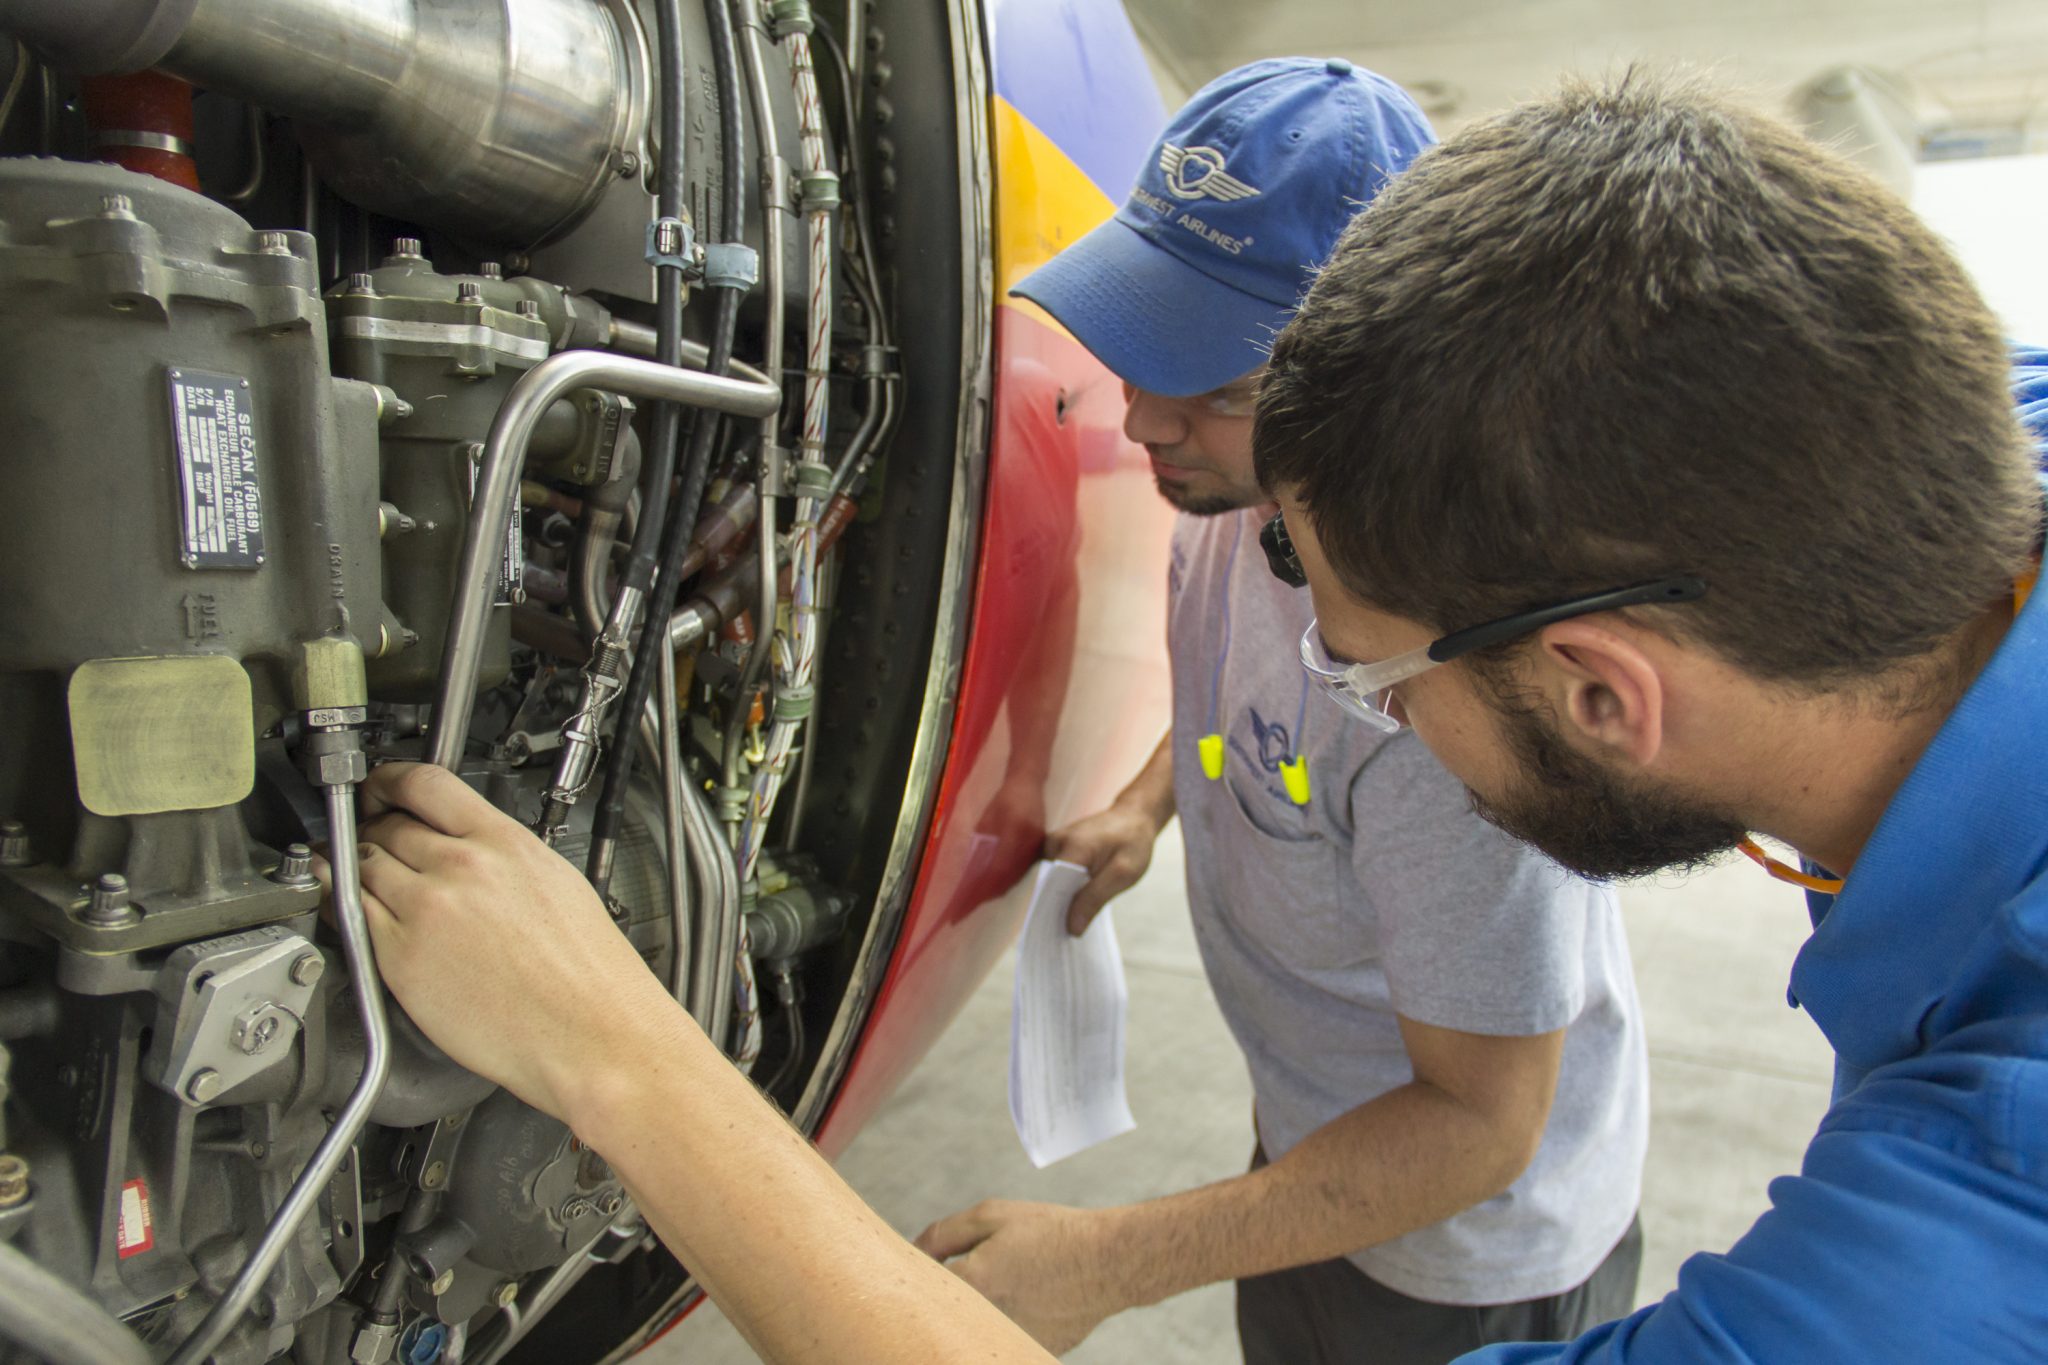 Maintenance technicians working on an aircraft